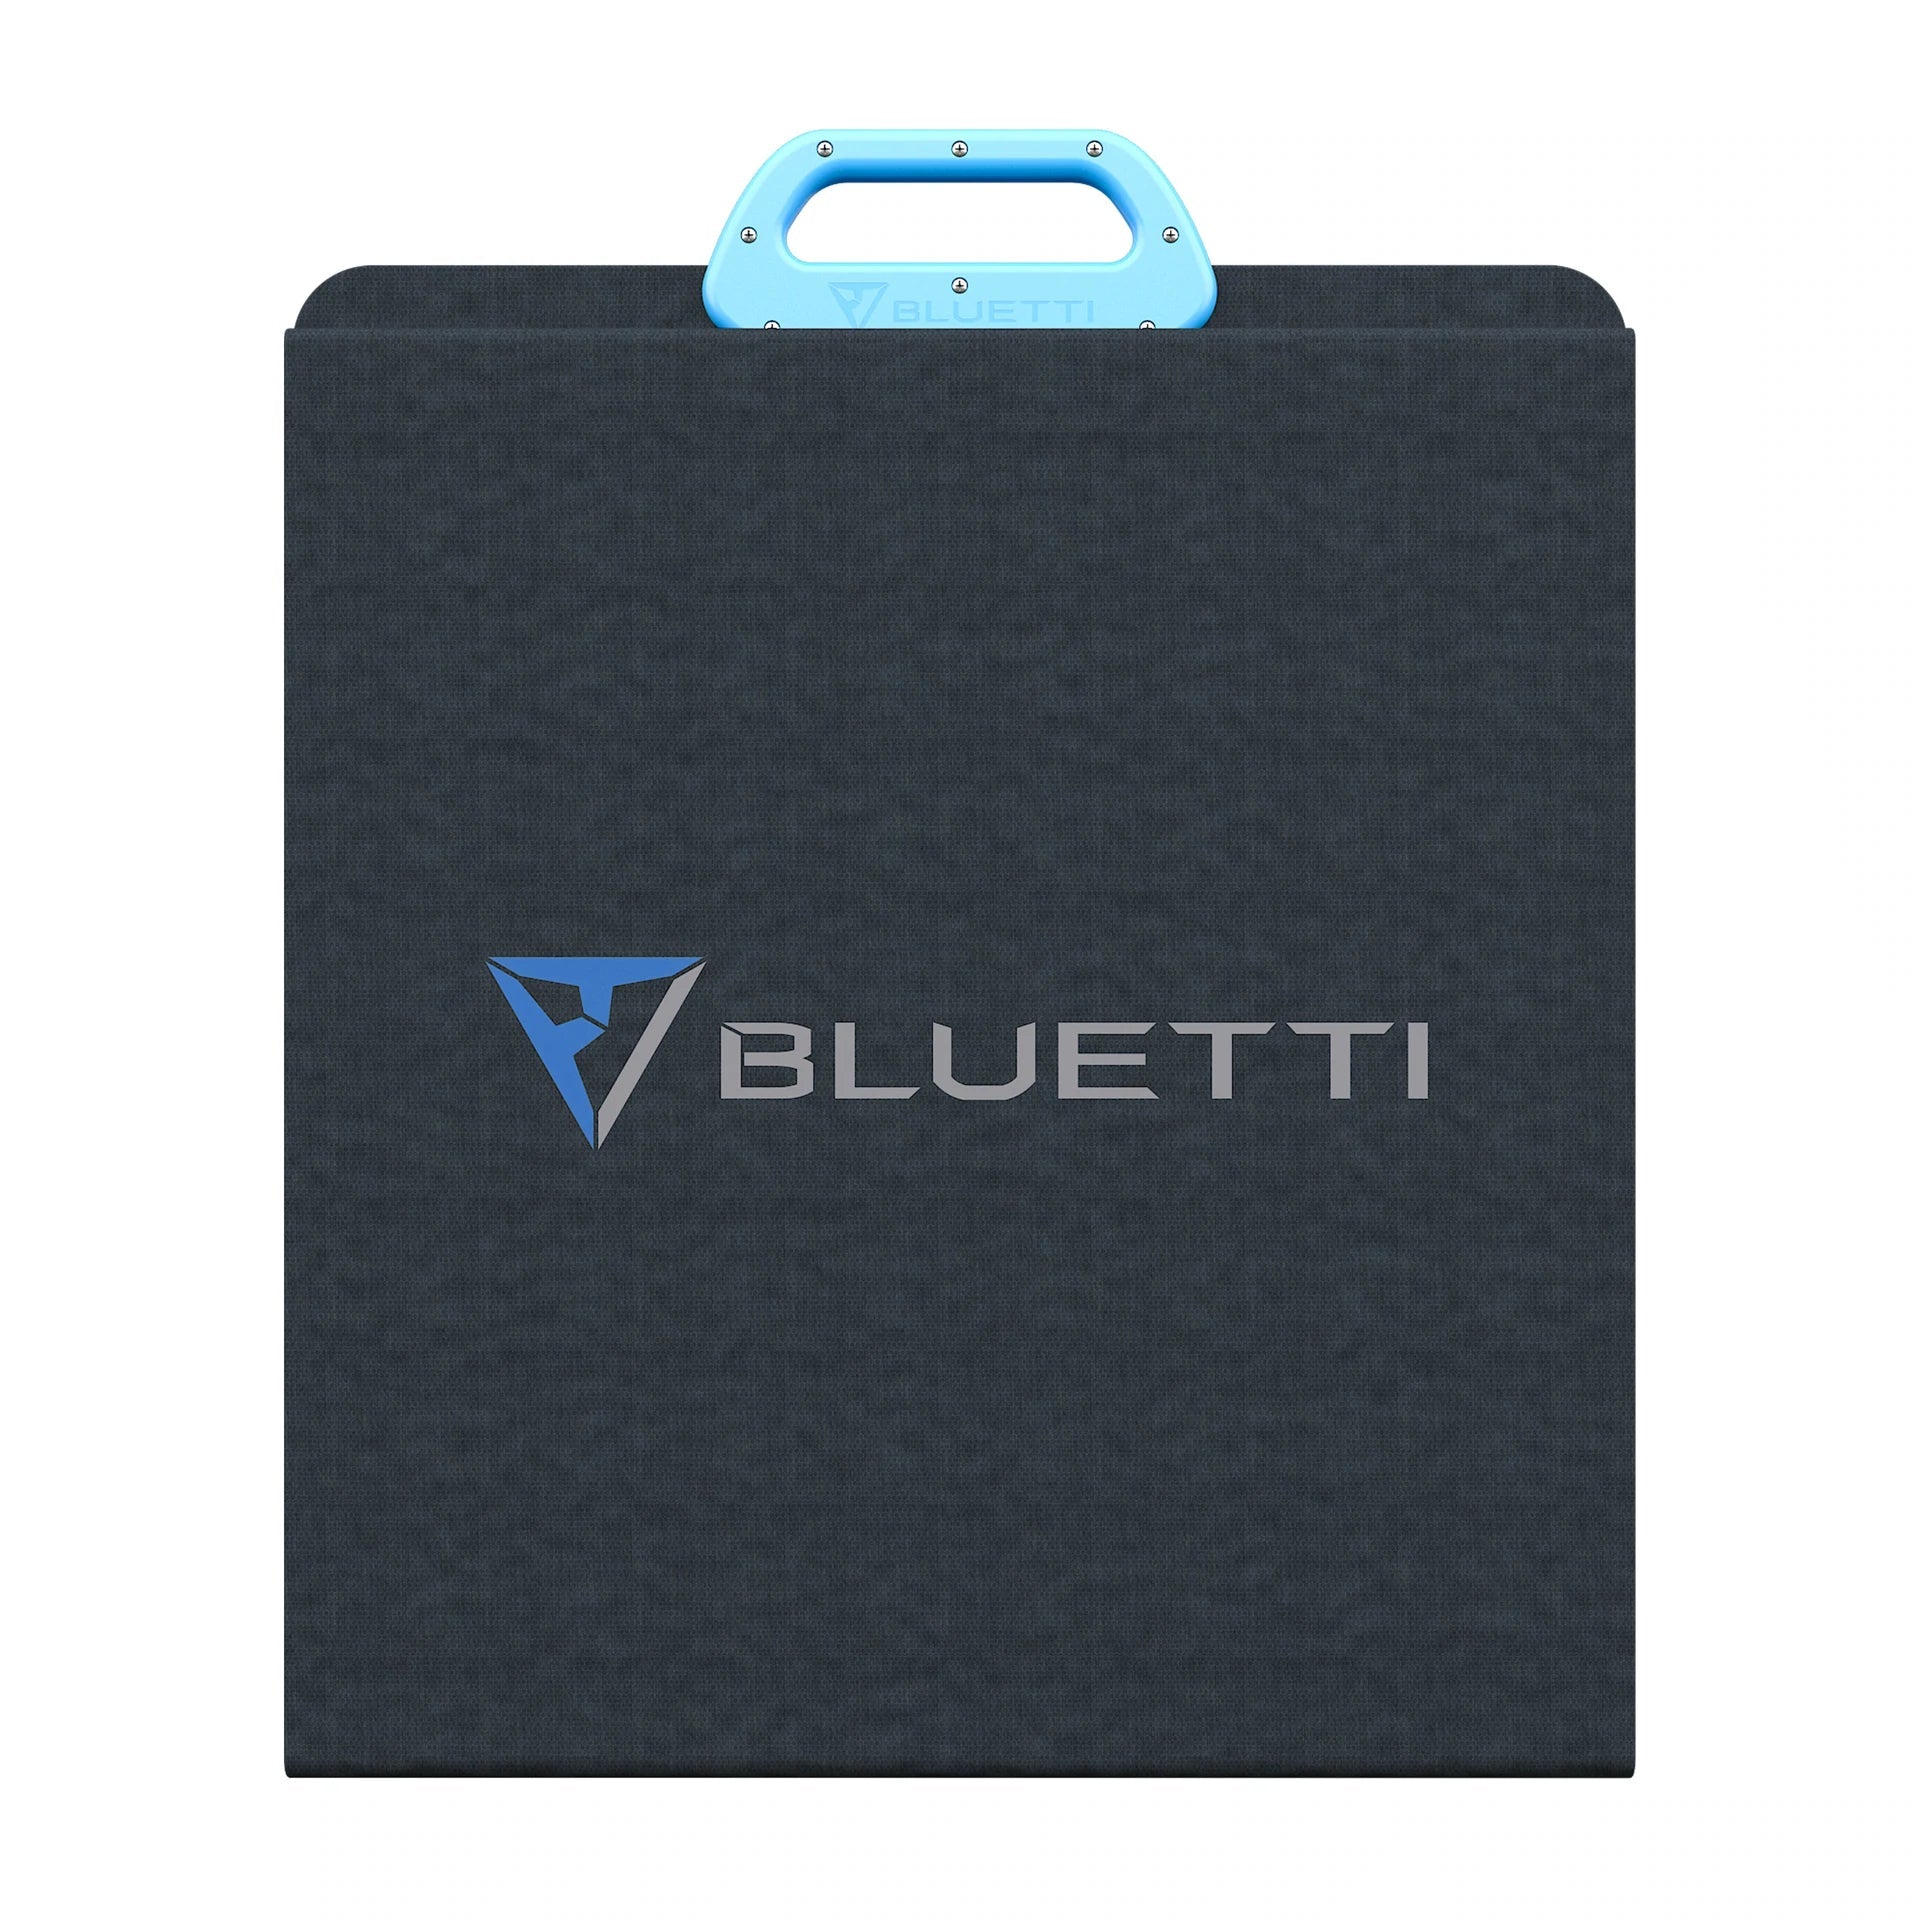 Bluetti PV200 200W Portable Solar Panel